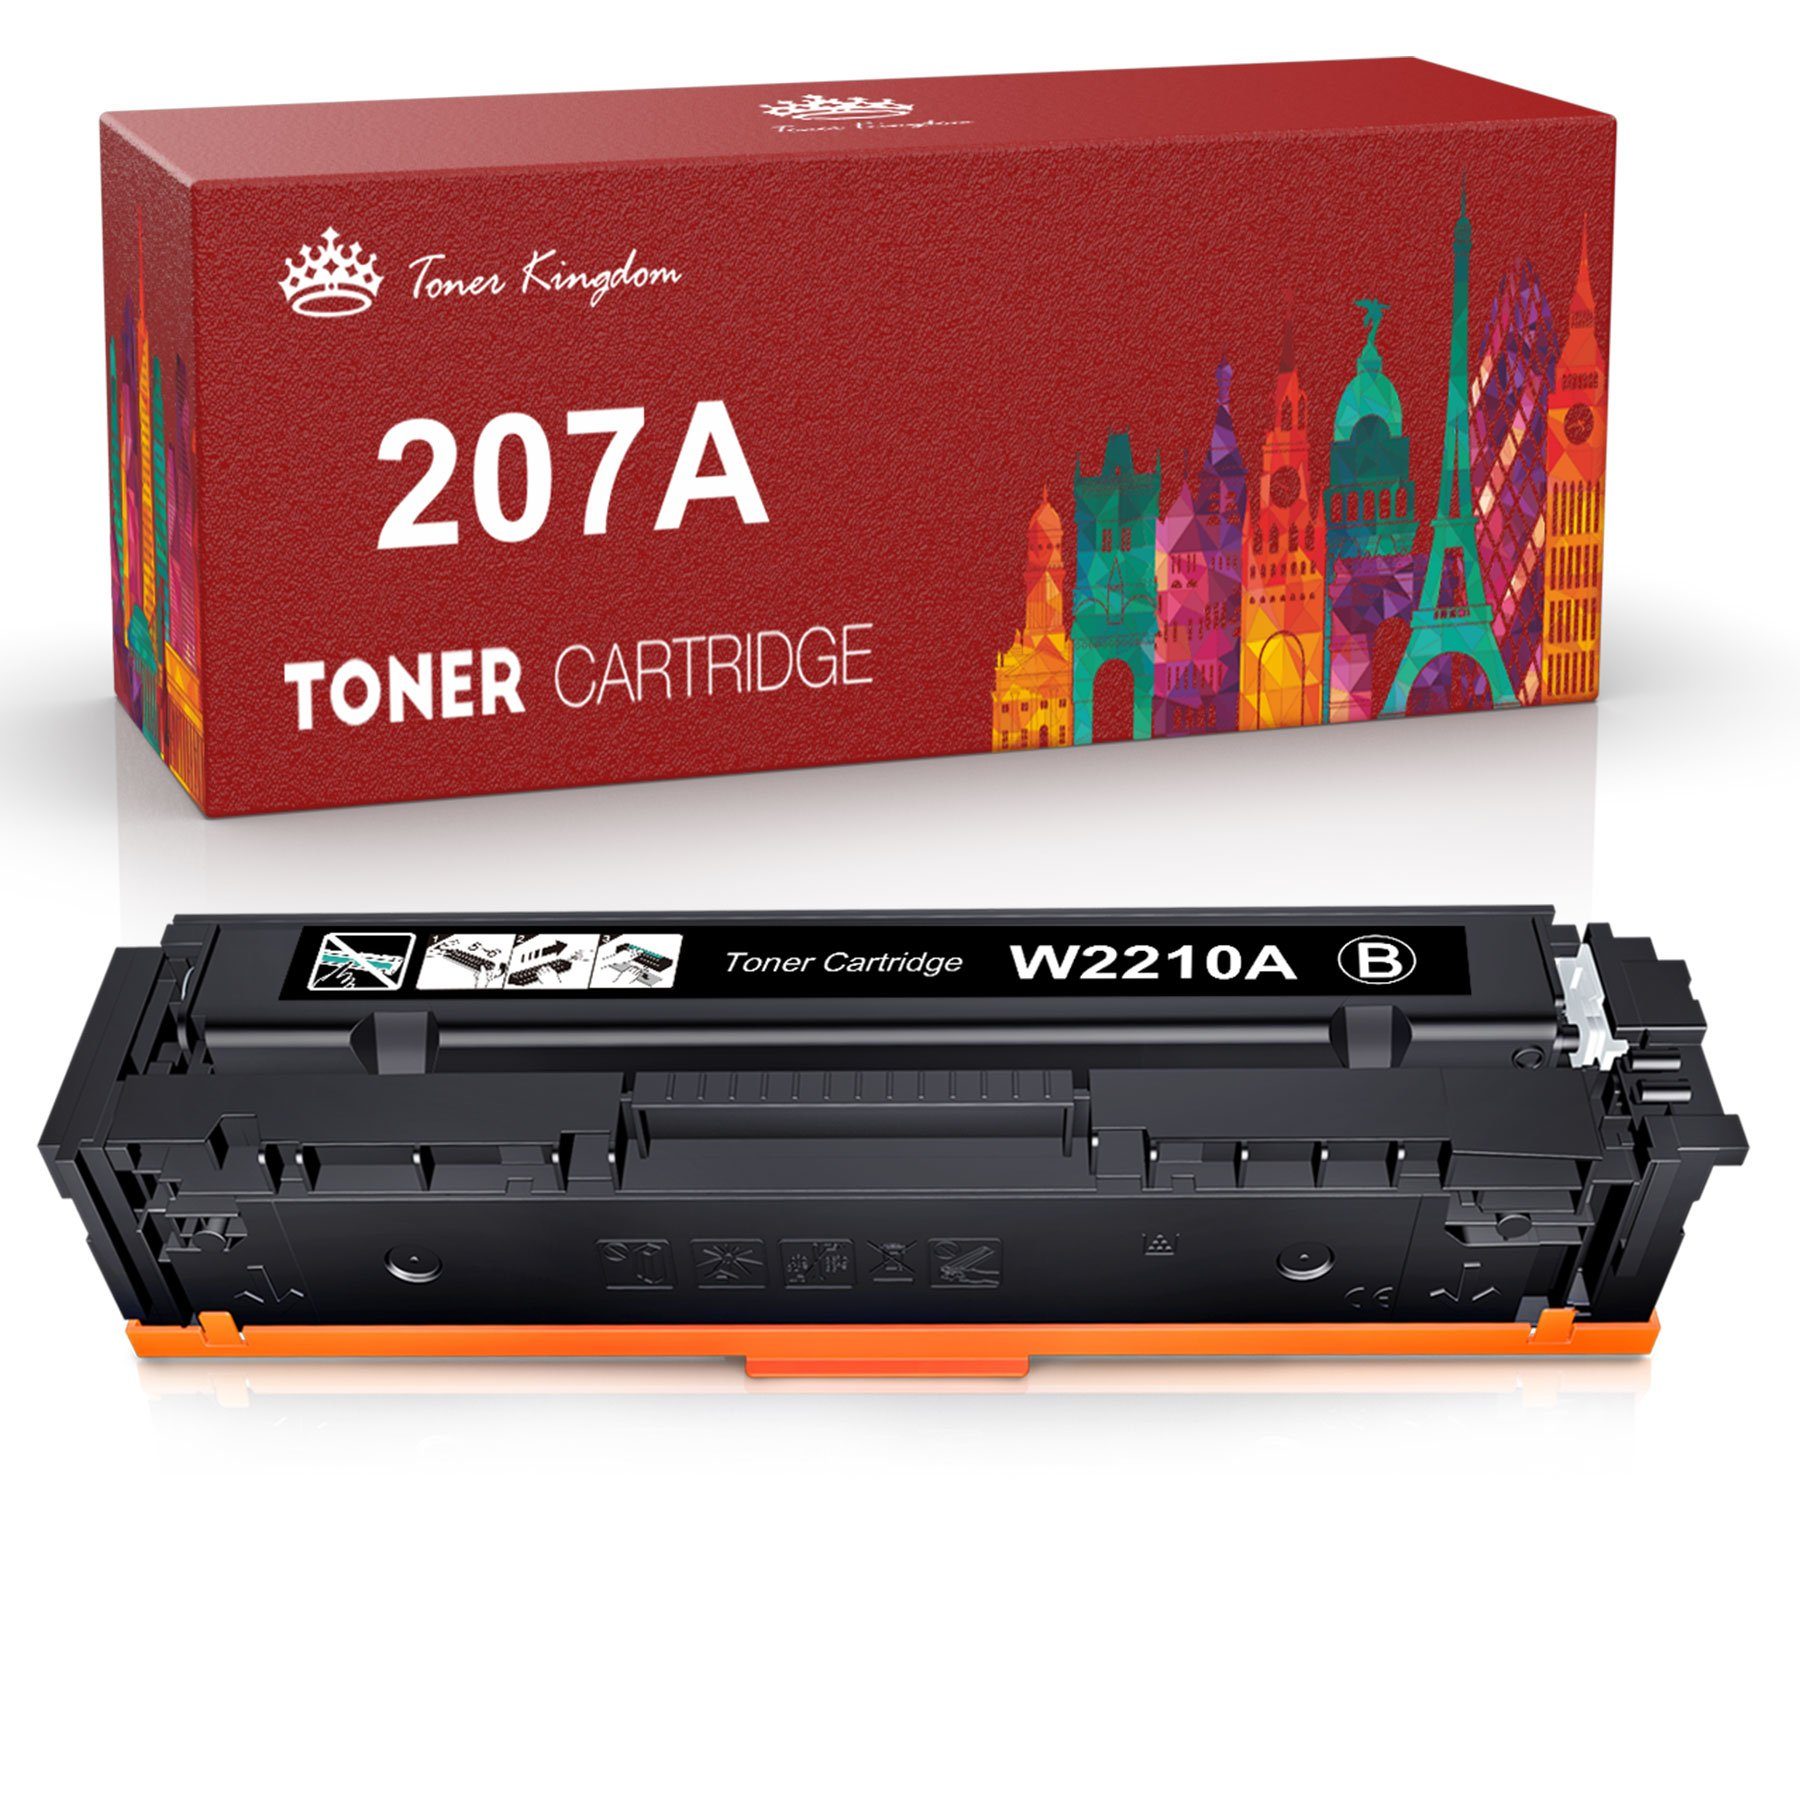 Toner Kingdom Tonerpatrone für HP 207A 207X W2210A W2211A W2212A W2213A